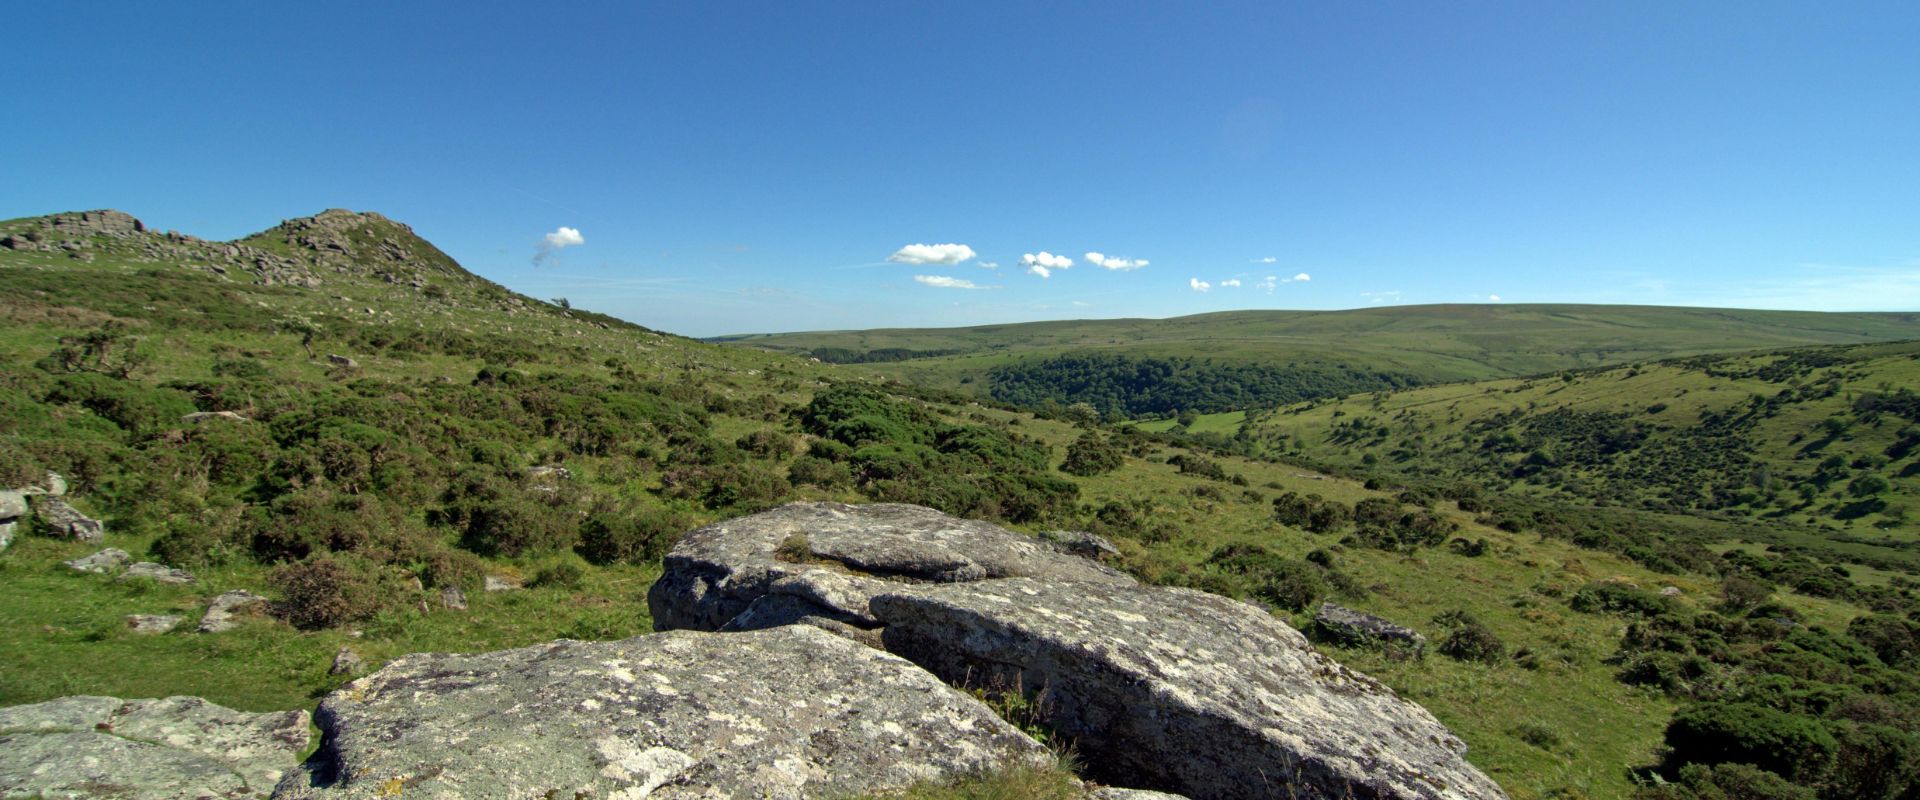 View across Dartmoor